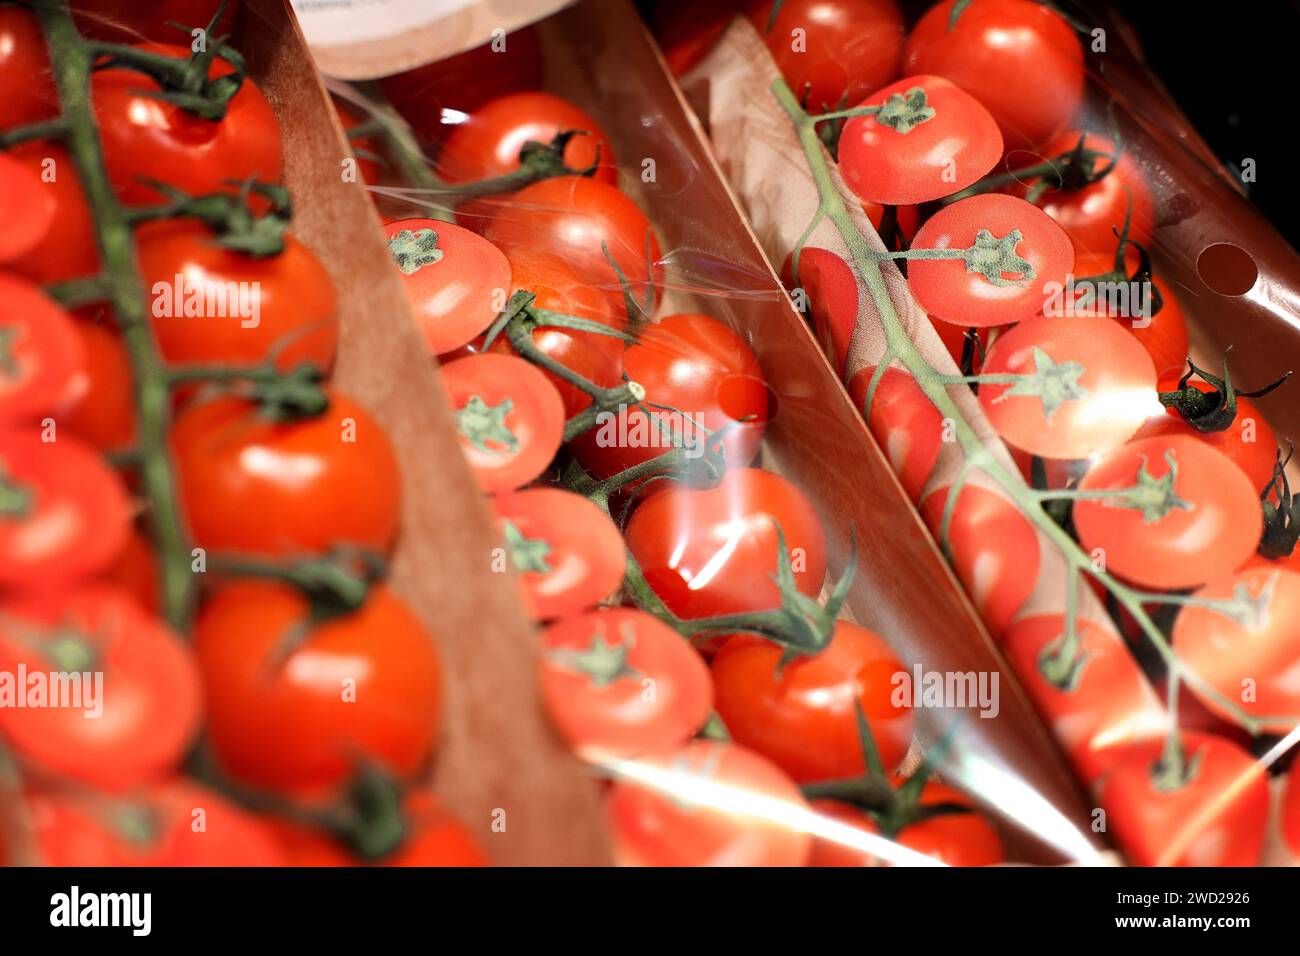 17.01.2024, Berlin - Deutschland. Verpackte Tomaten in einem Regal im Supermarkt. *** 17 01 2024, Berlin Germany Packaged tomatoes on a supermarket shelf Stock Photo